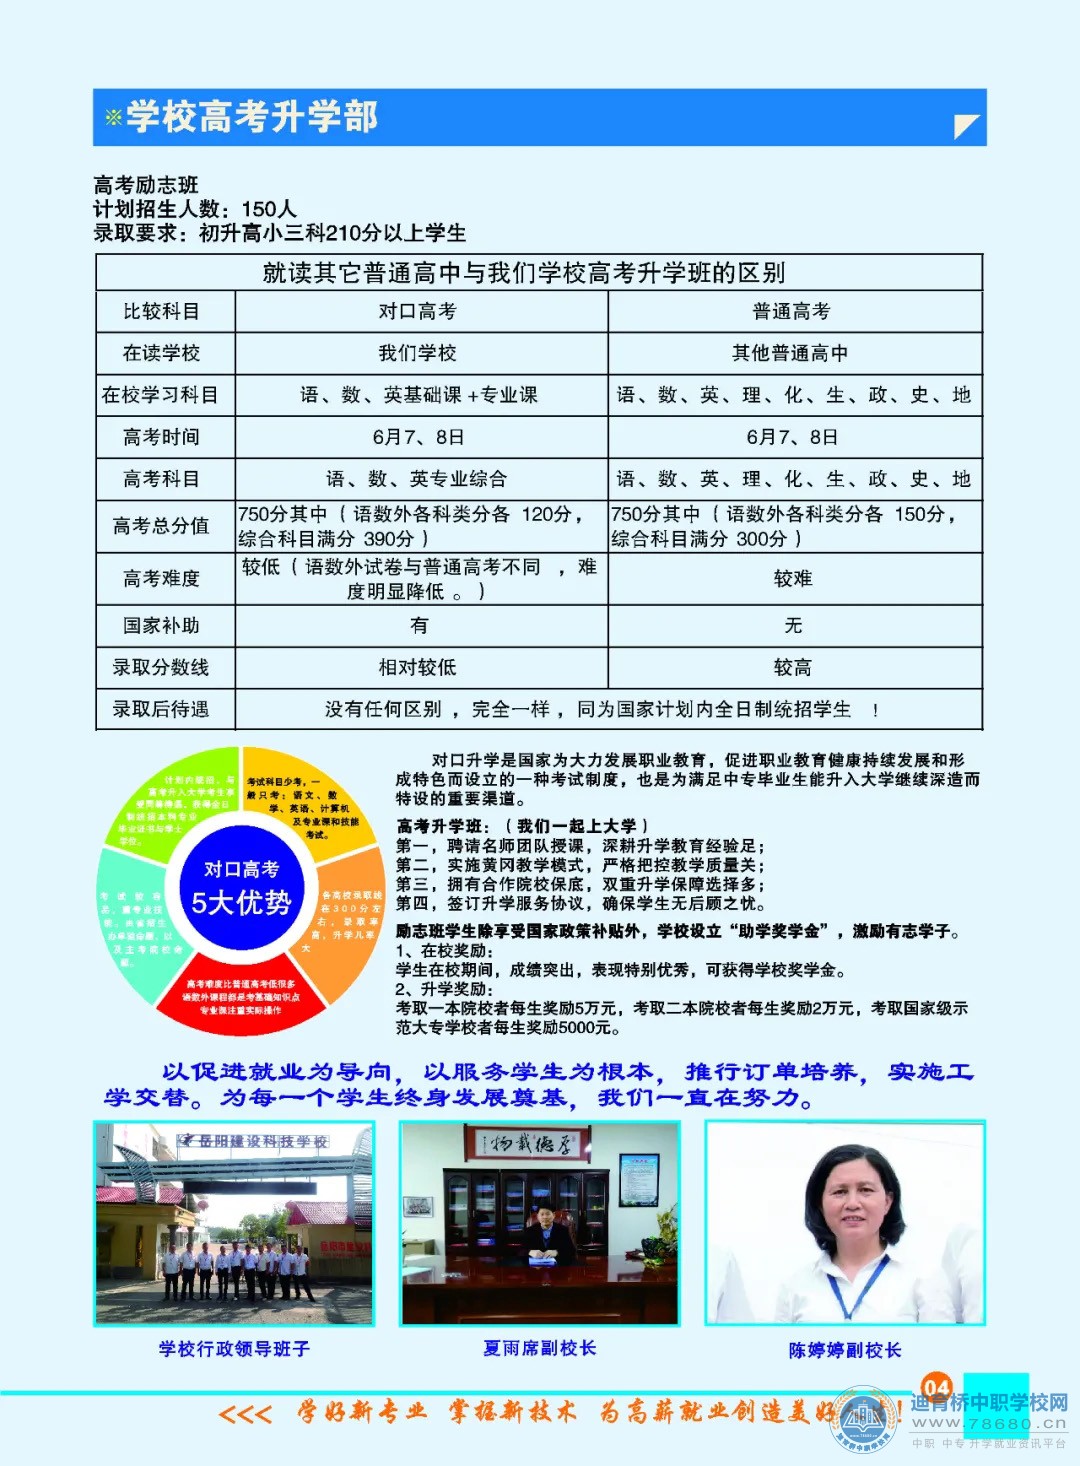 岳阳市建设科技职业技术学校2021年招生简章